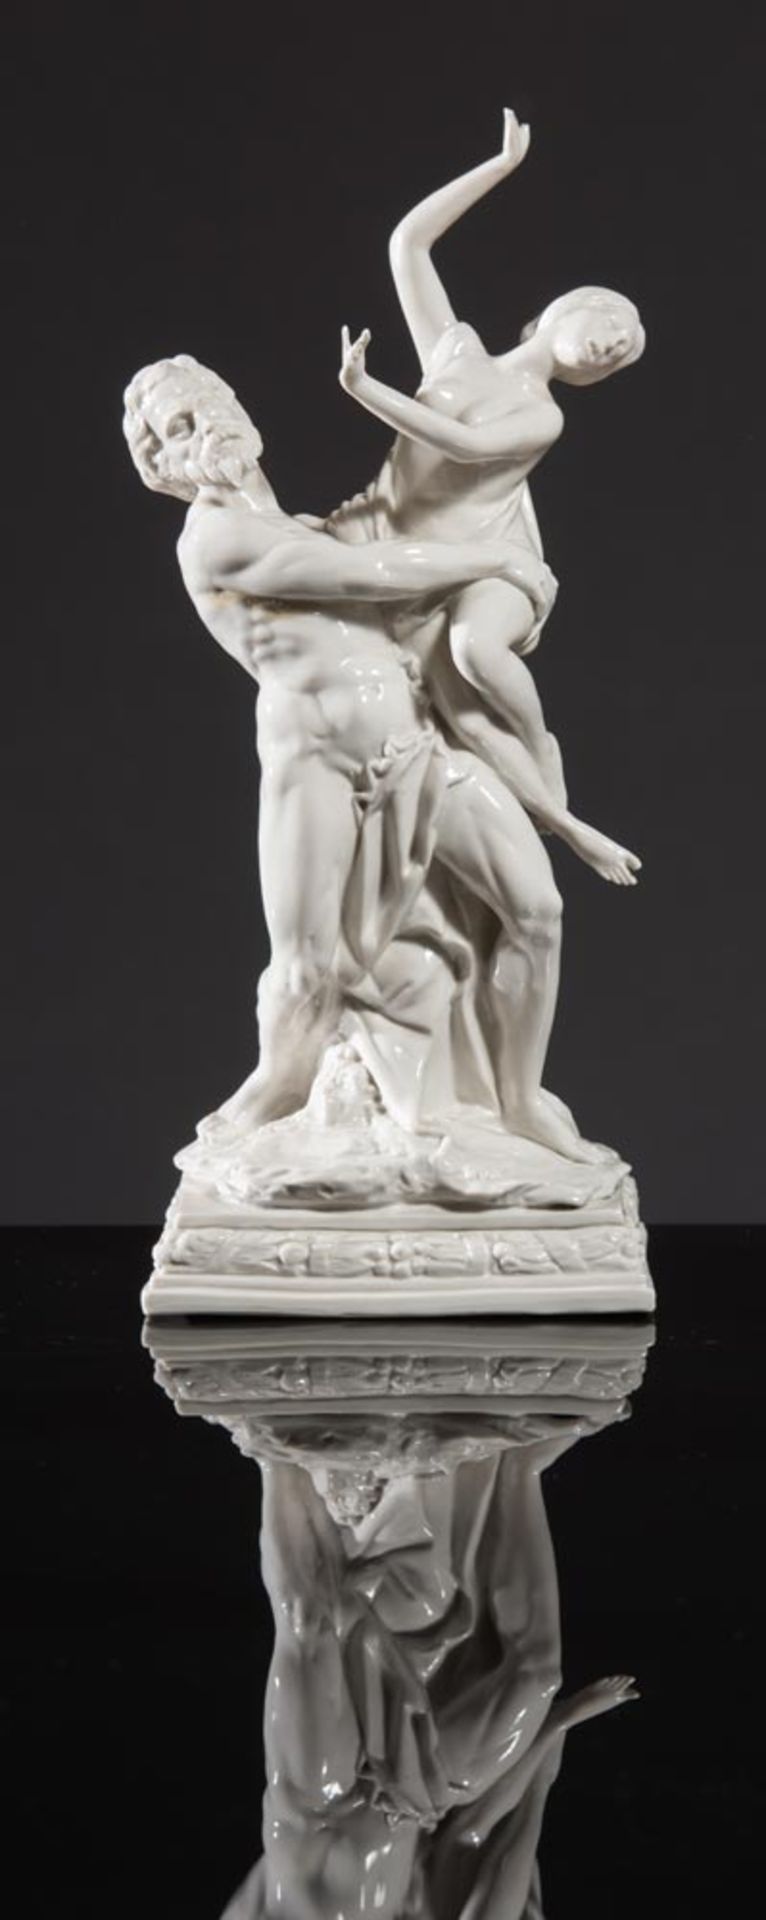 Luigi Fabris (Bassano del Grappa 1883 - 1952), "Ratto di Proserpina", white porcelain figurine.